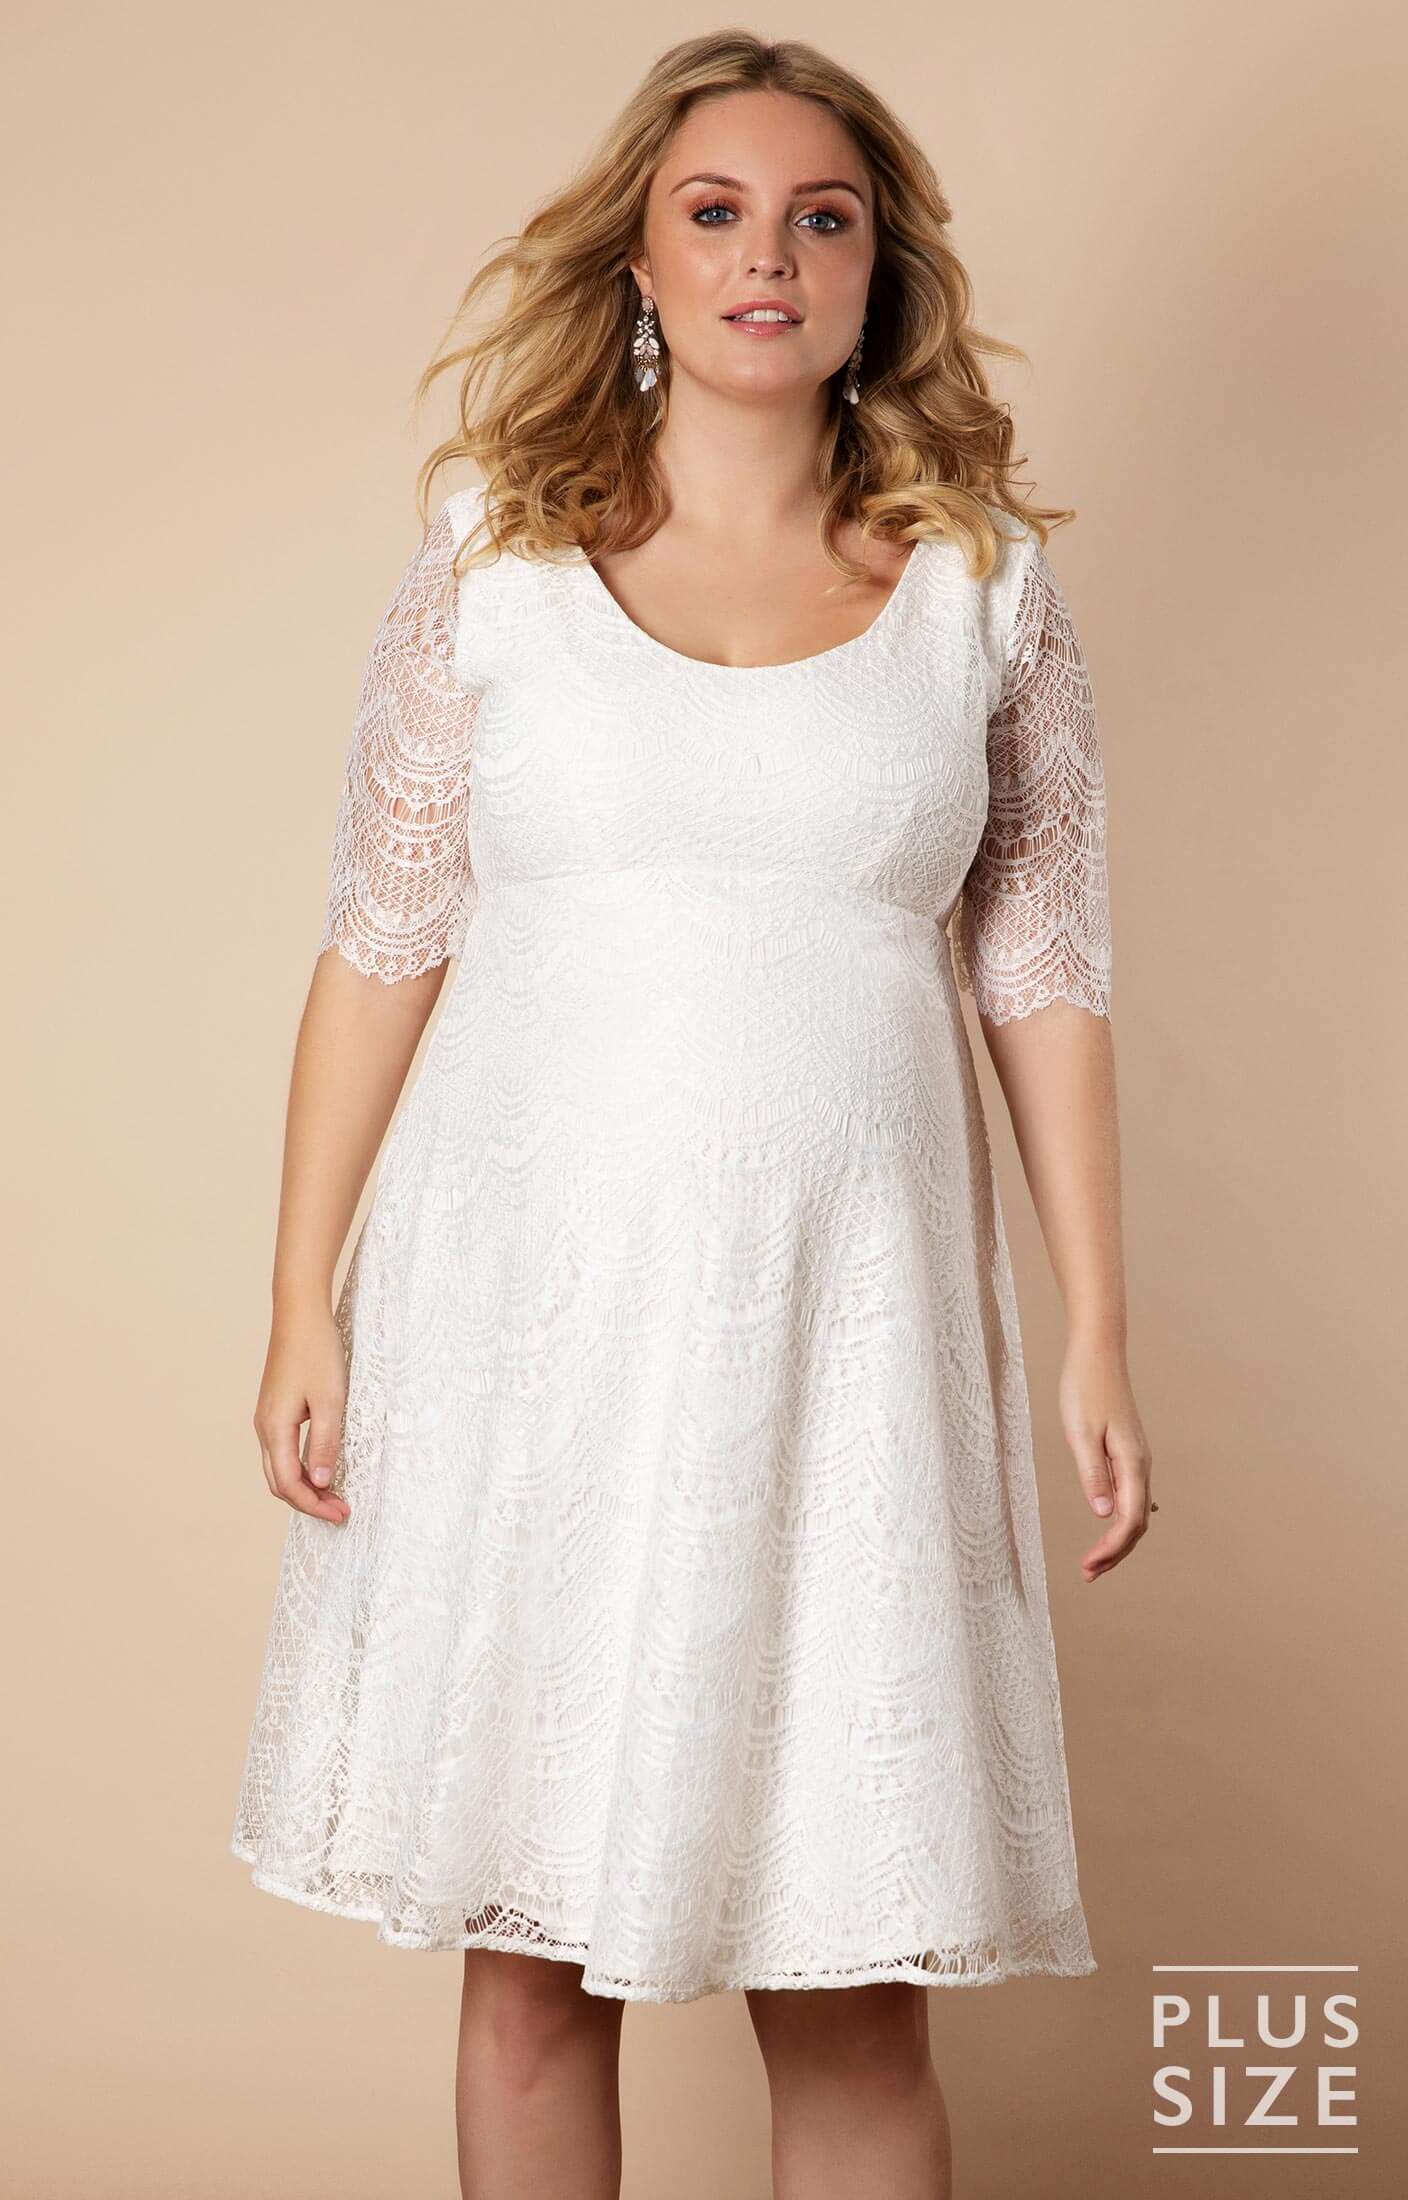 Verona Plus Size Maternity Wedding Dress Short Ivory White - Maternity ...